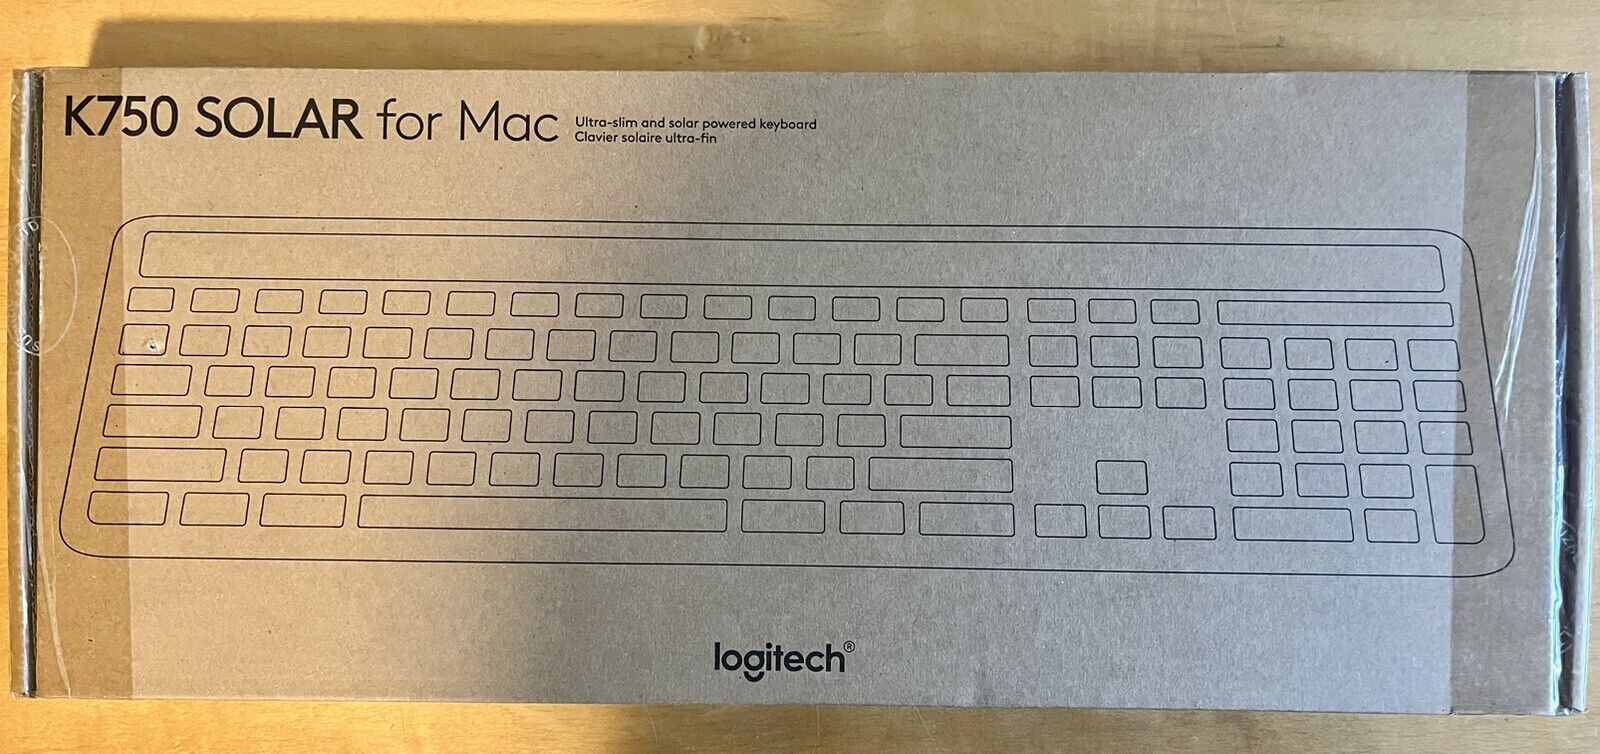 Logitech K750 (920-003472) Solar For Mac Wireless Keyboard NEW, Boxed